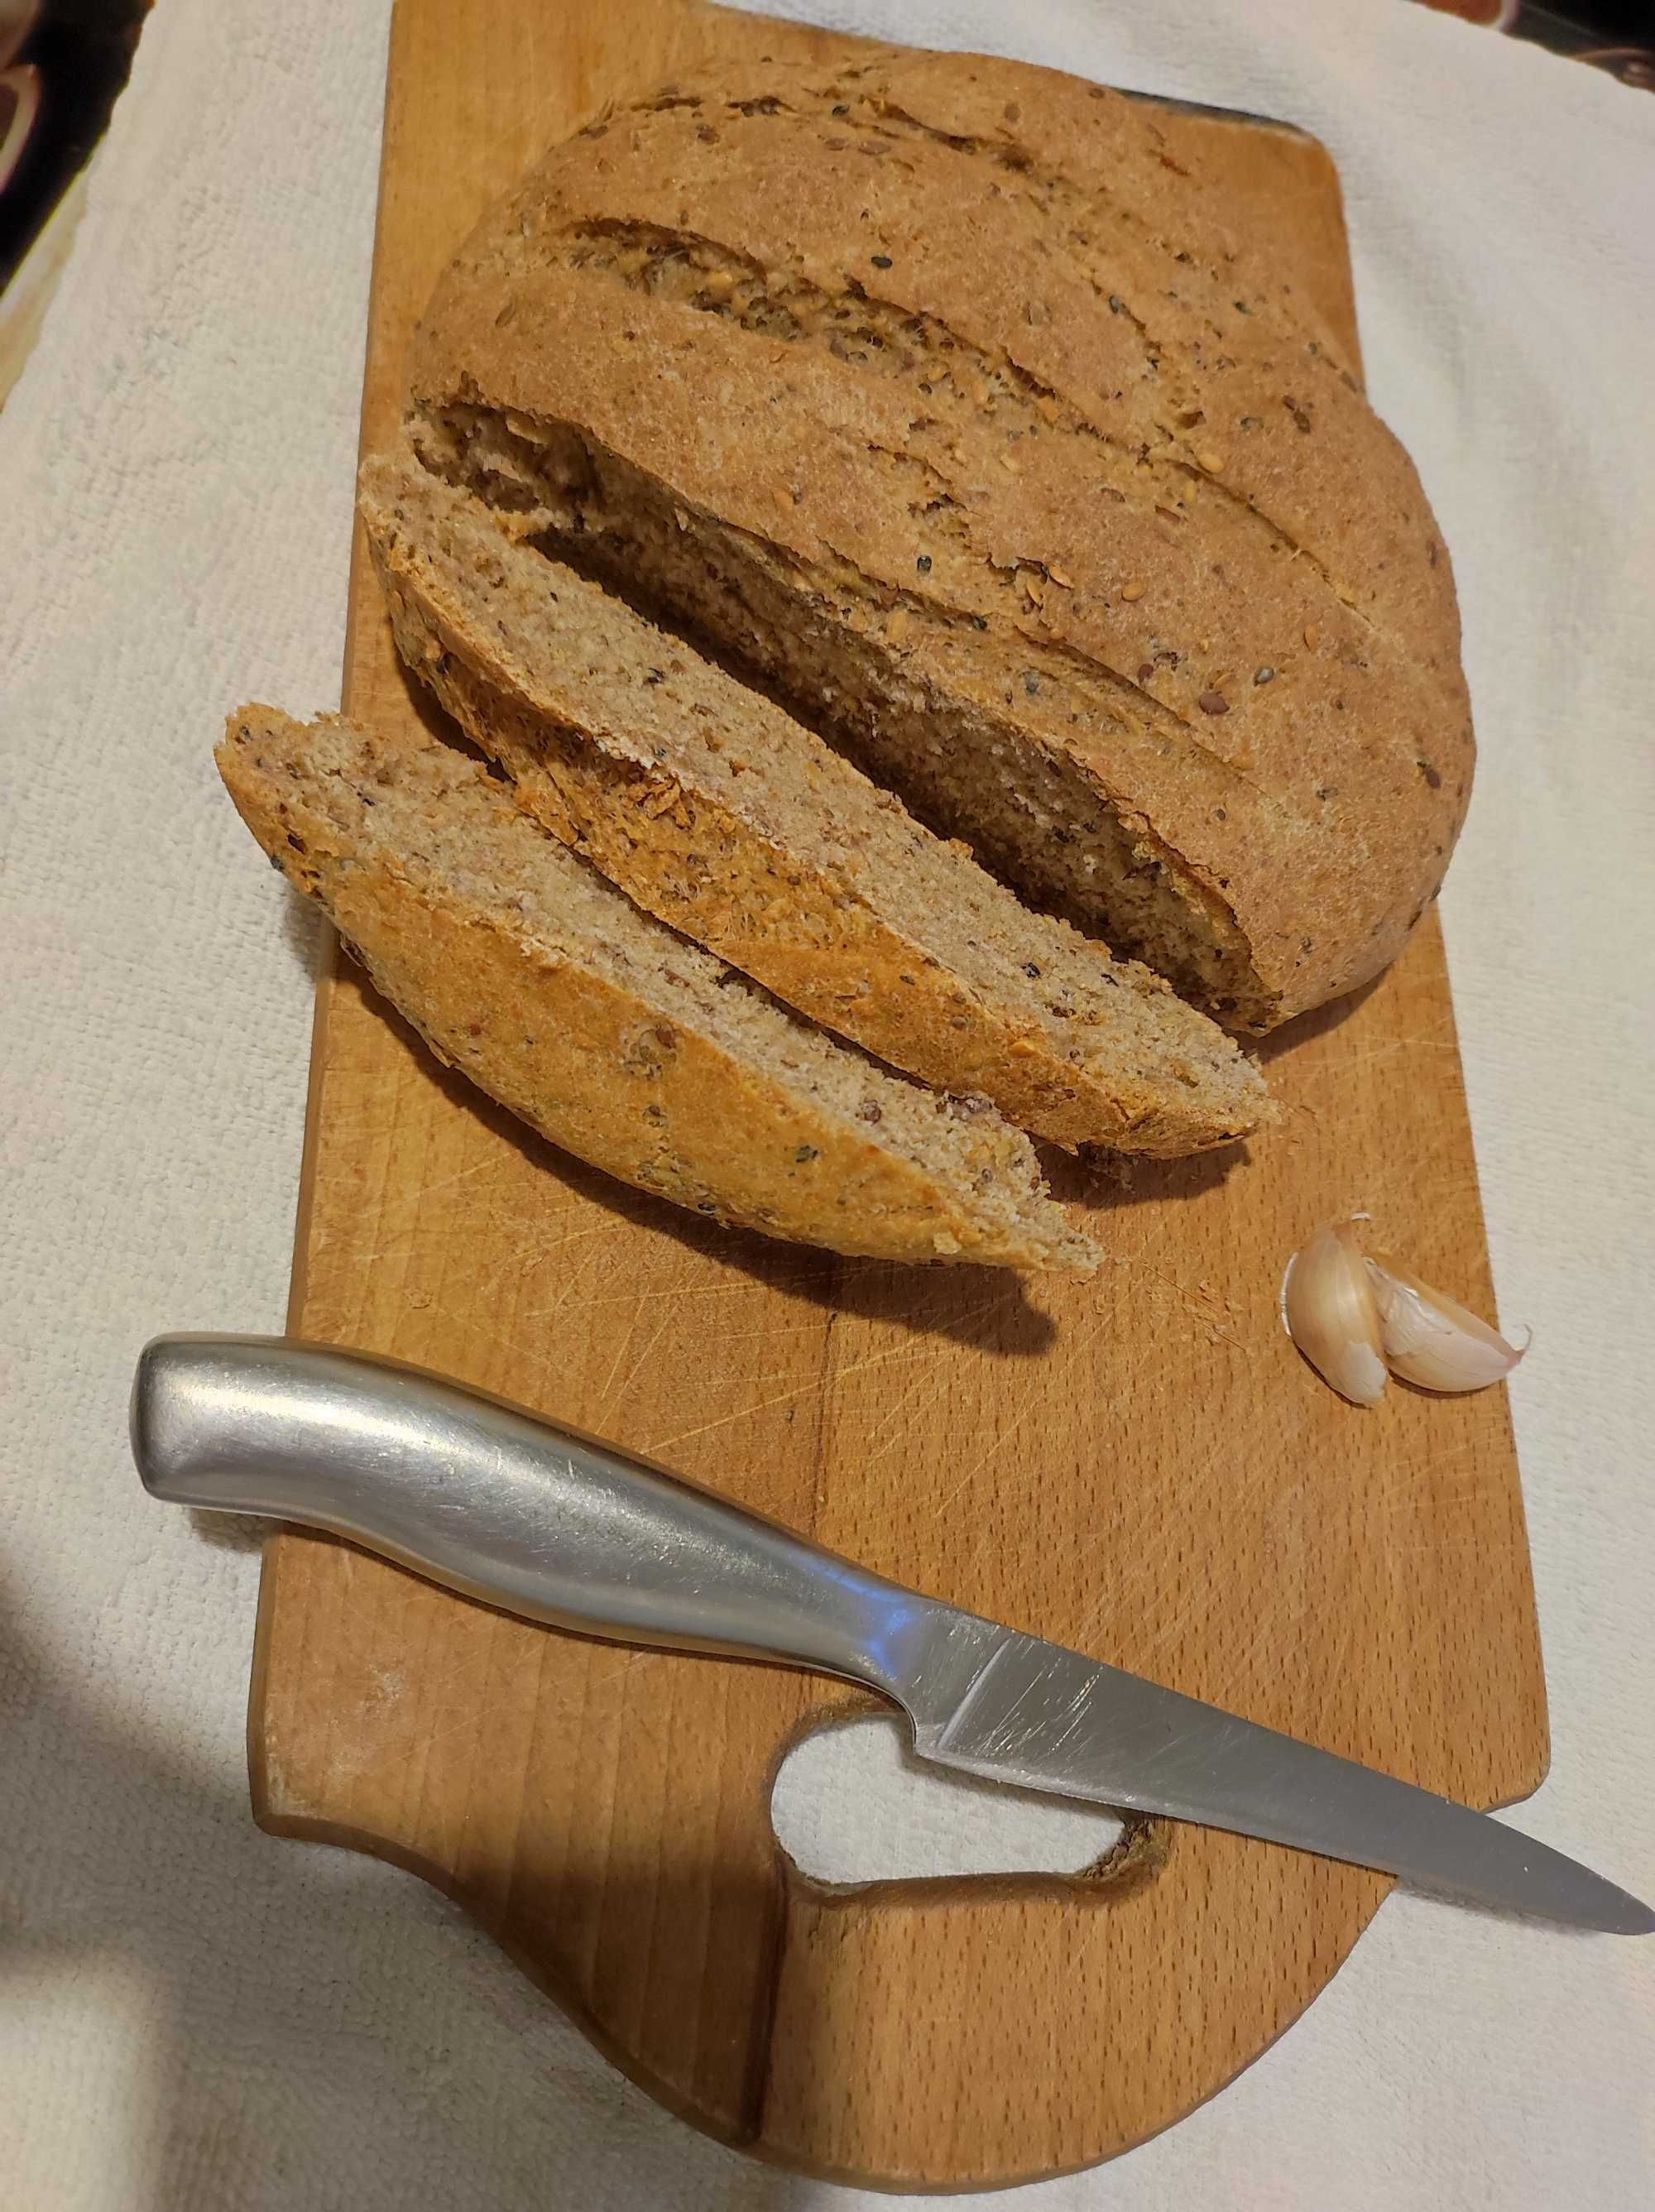 Домашний вкусный полезный хлеб, под заказ!